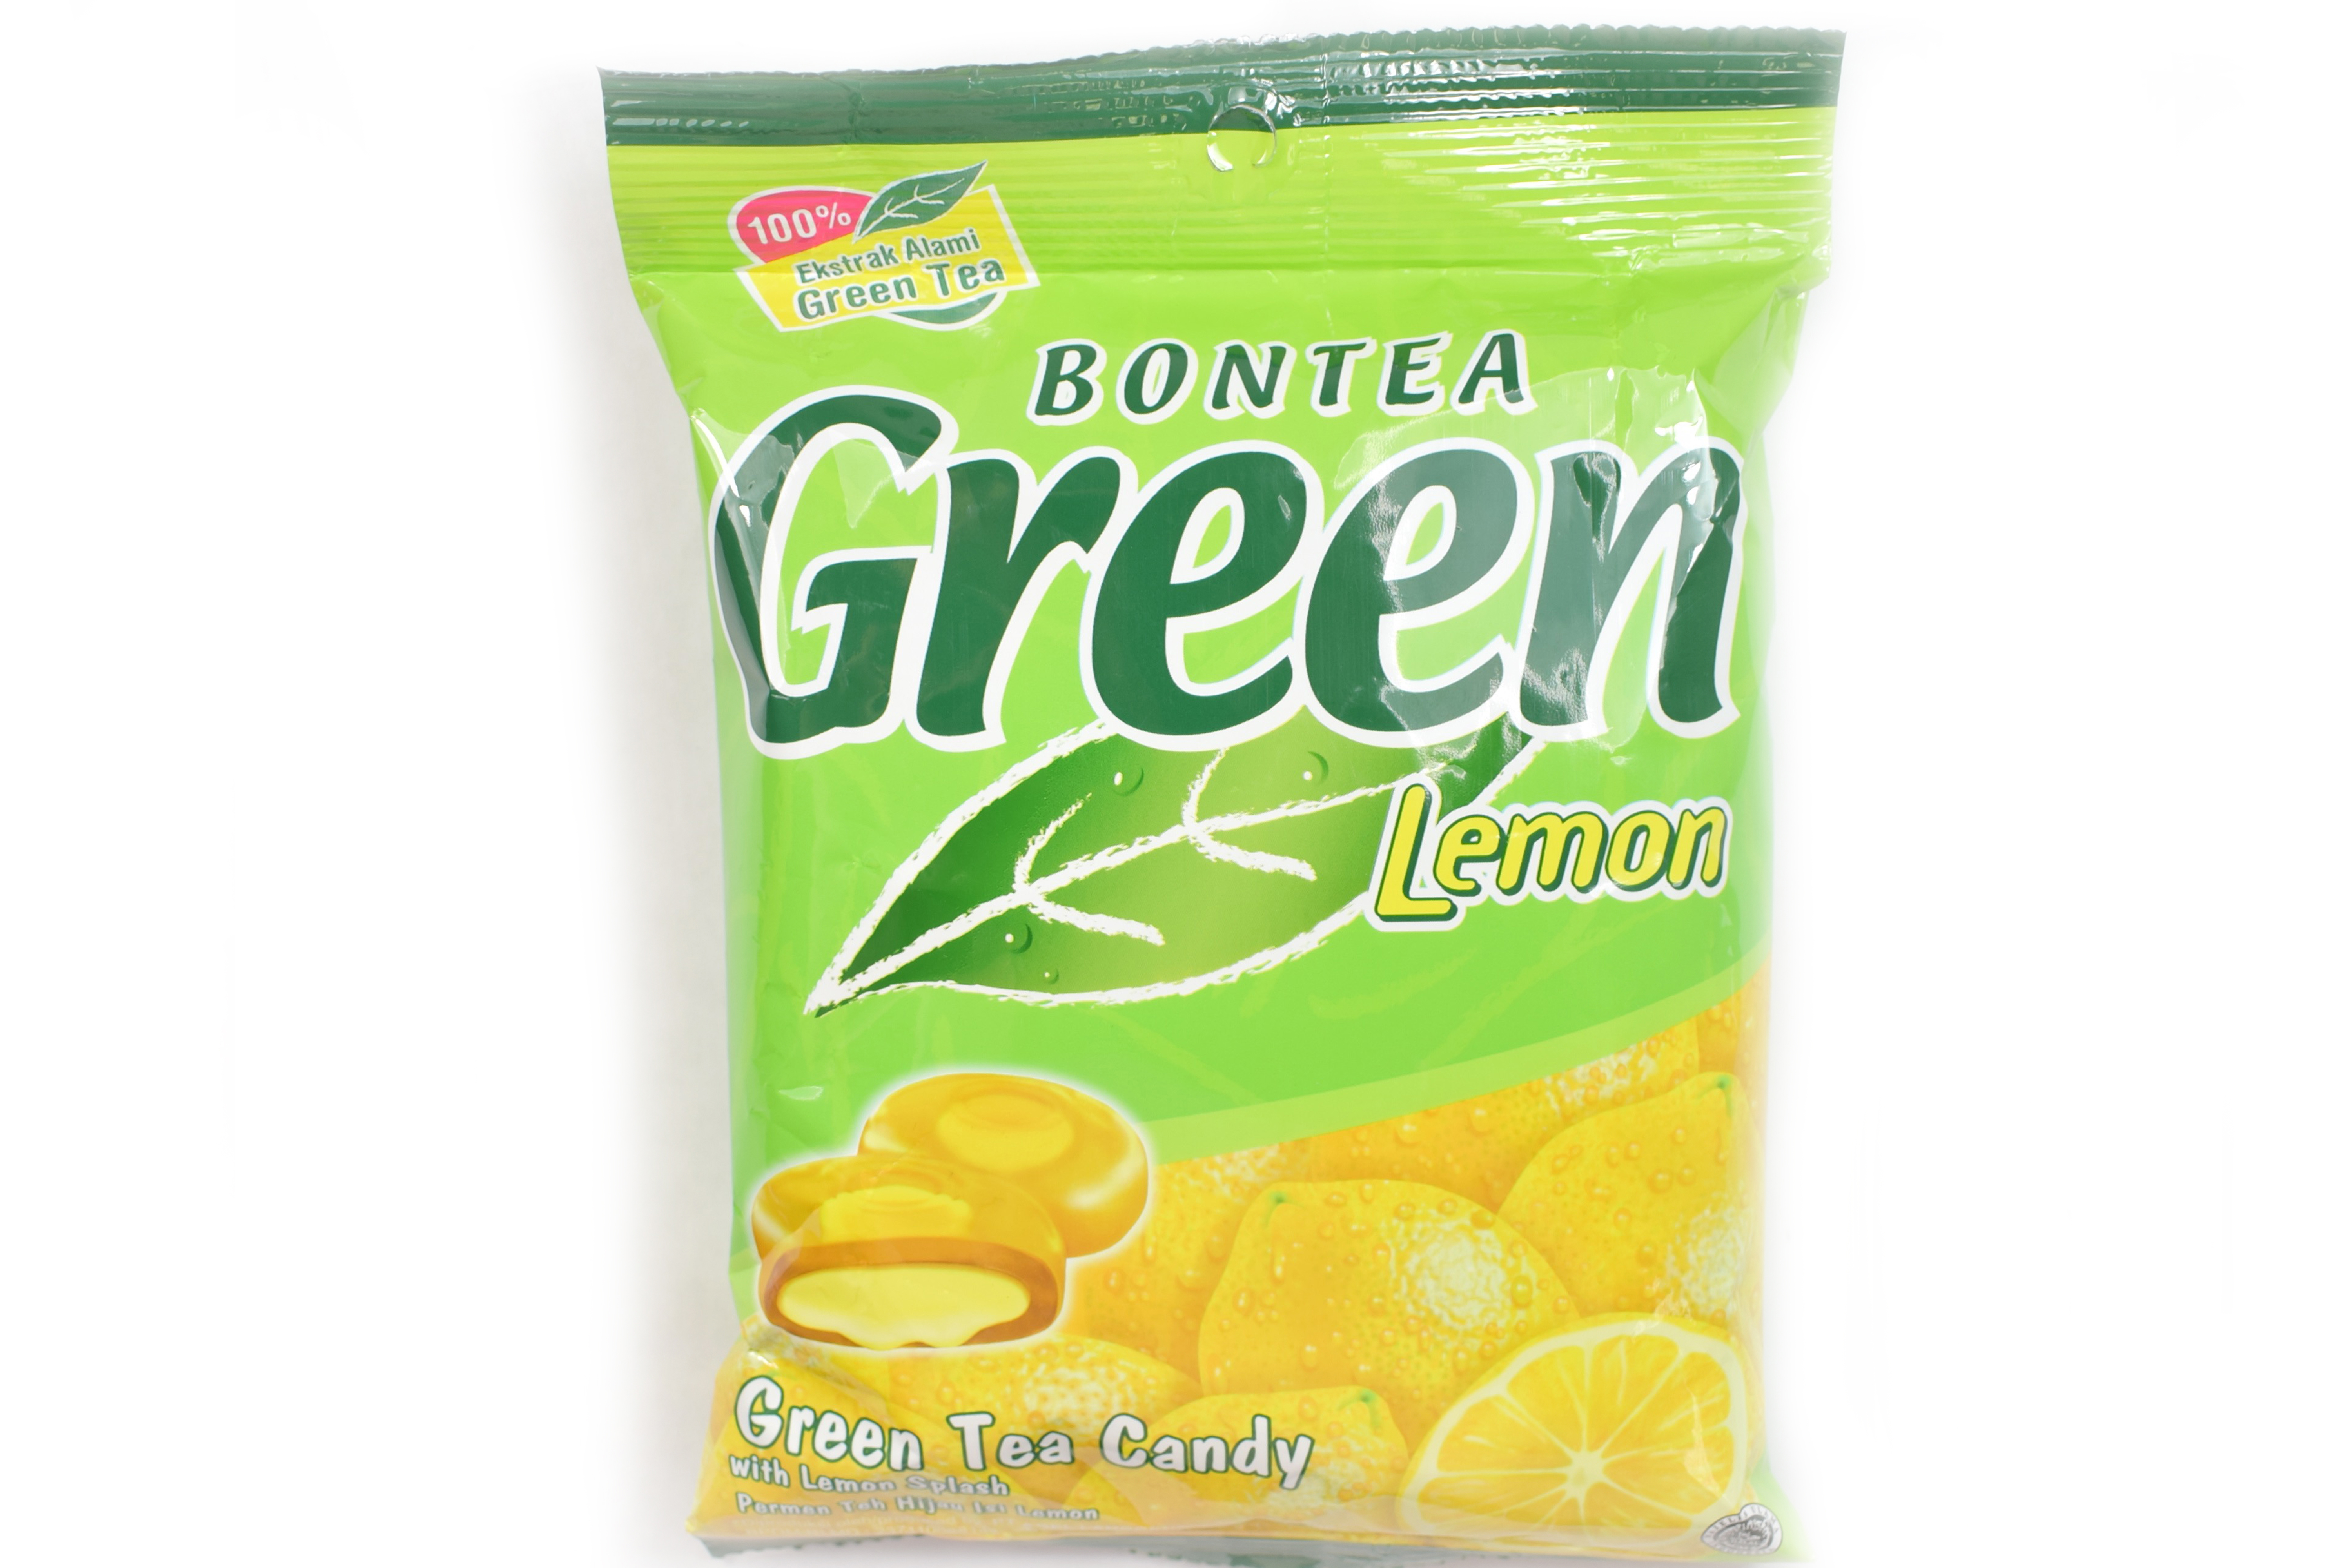 Green Tea copy